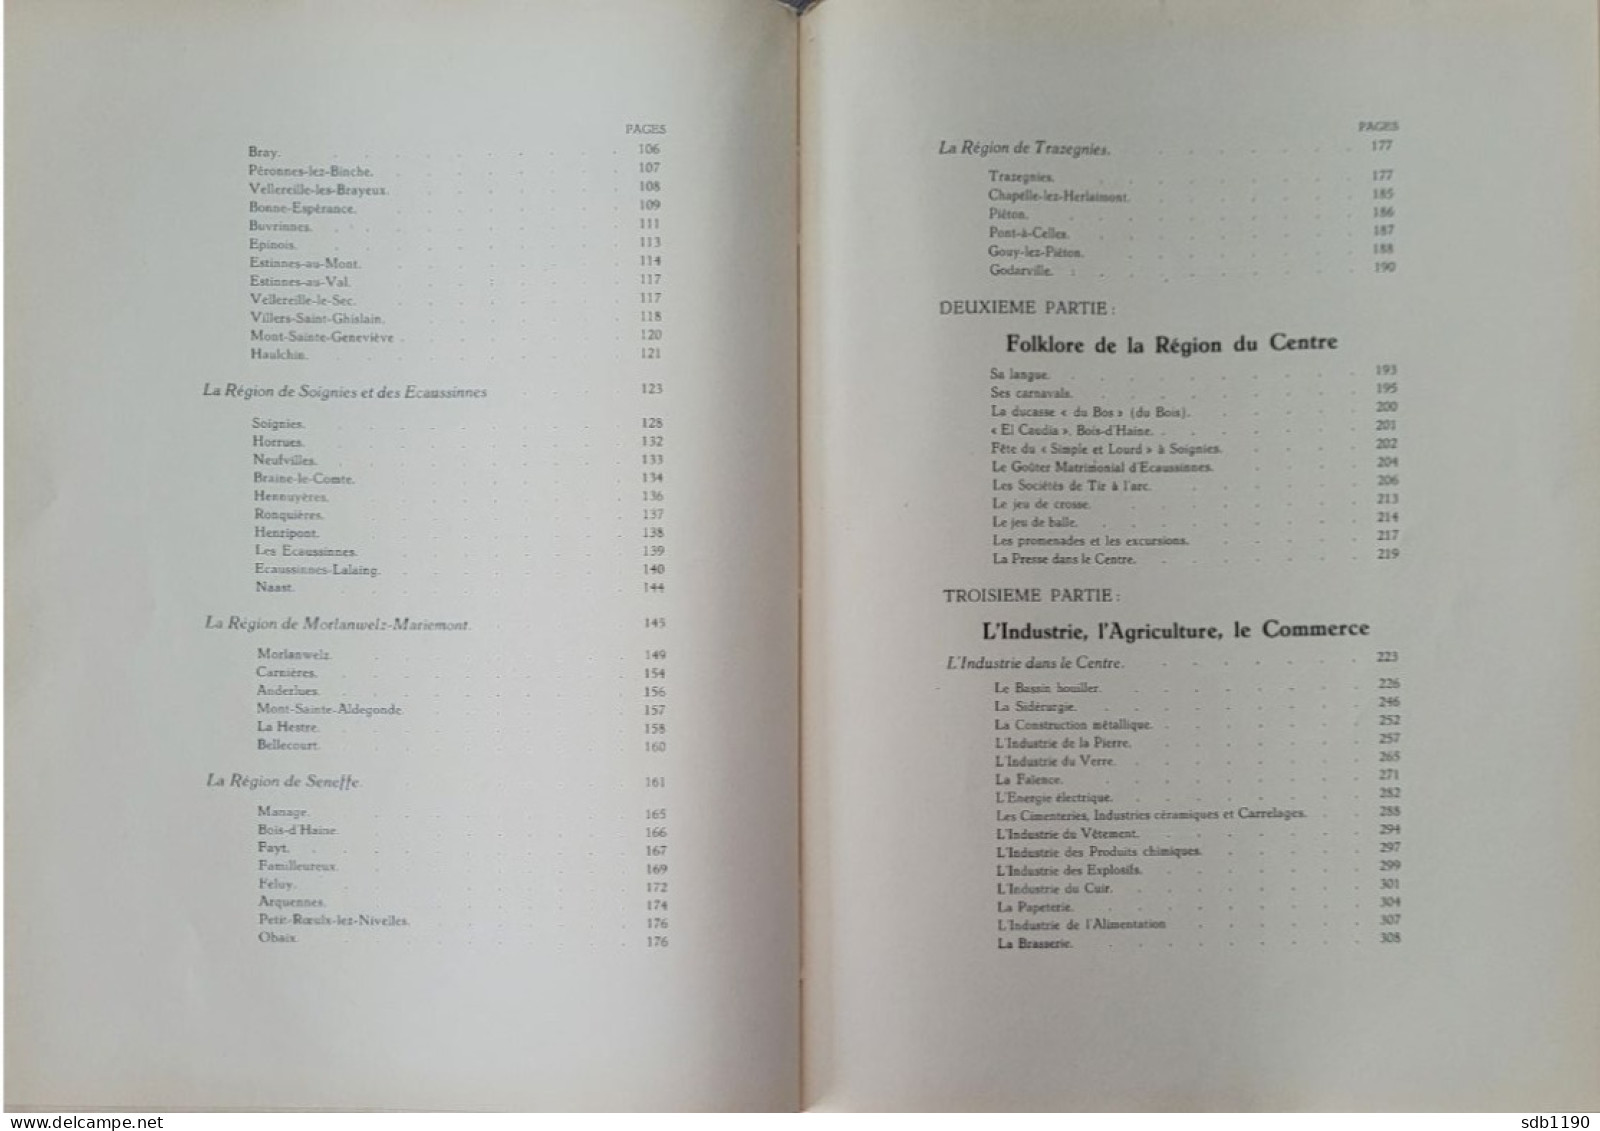 Livre 'Le Centre Archéologique, Folklorique, Industriel, Commercial, Artistique, Scolaire' 1930 Avec 317 Illustrations - Archeologie